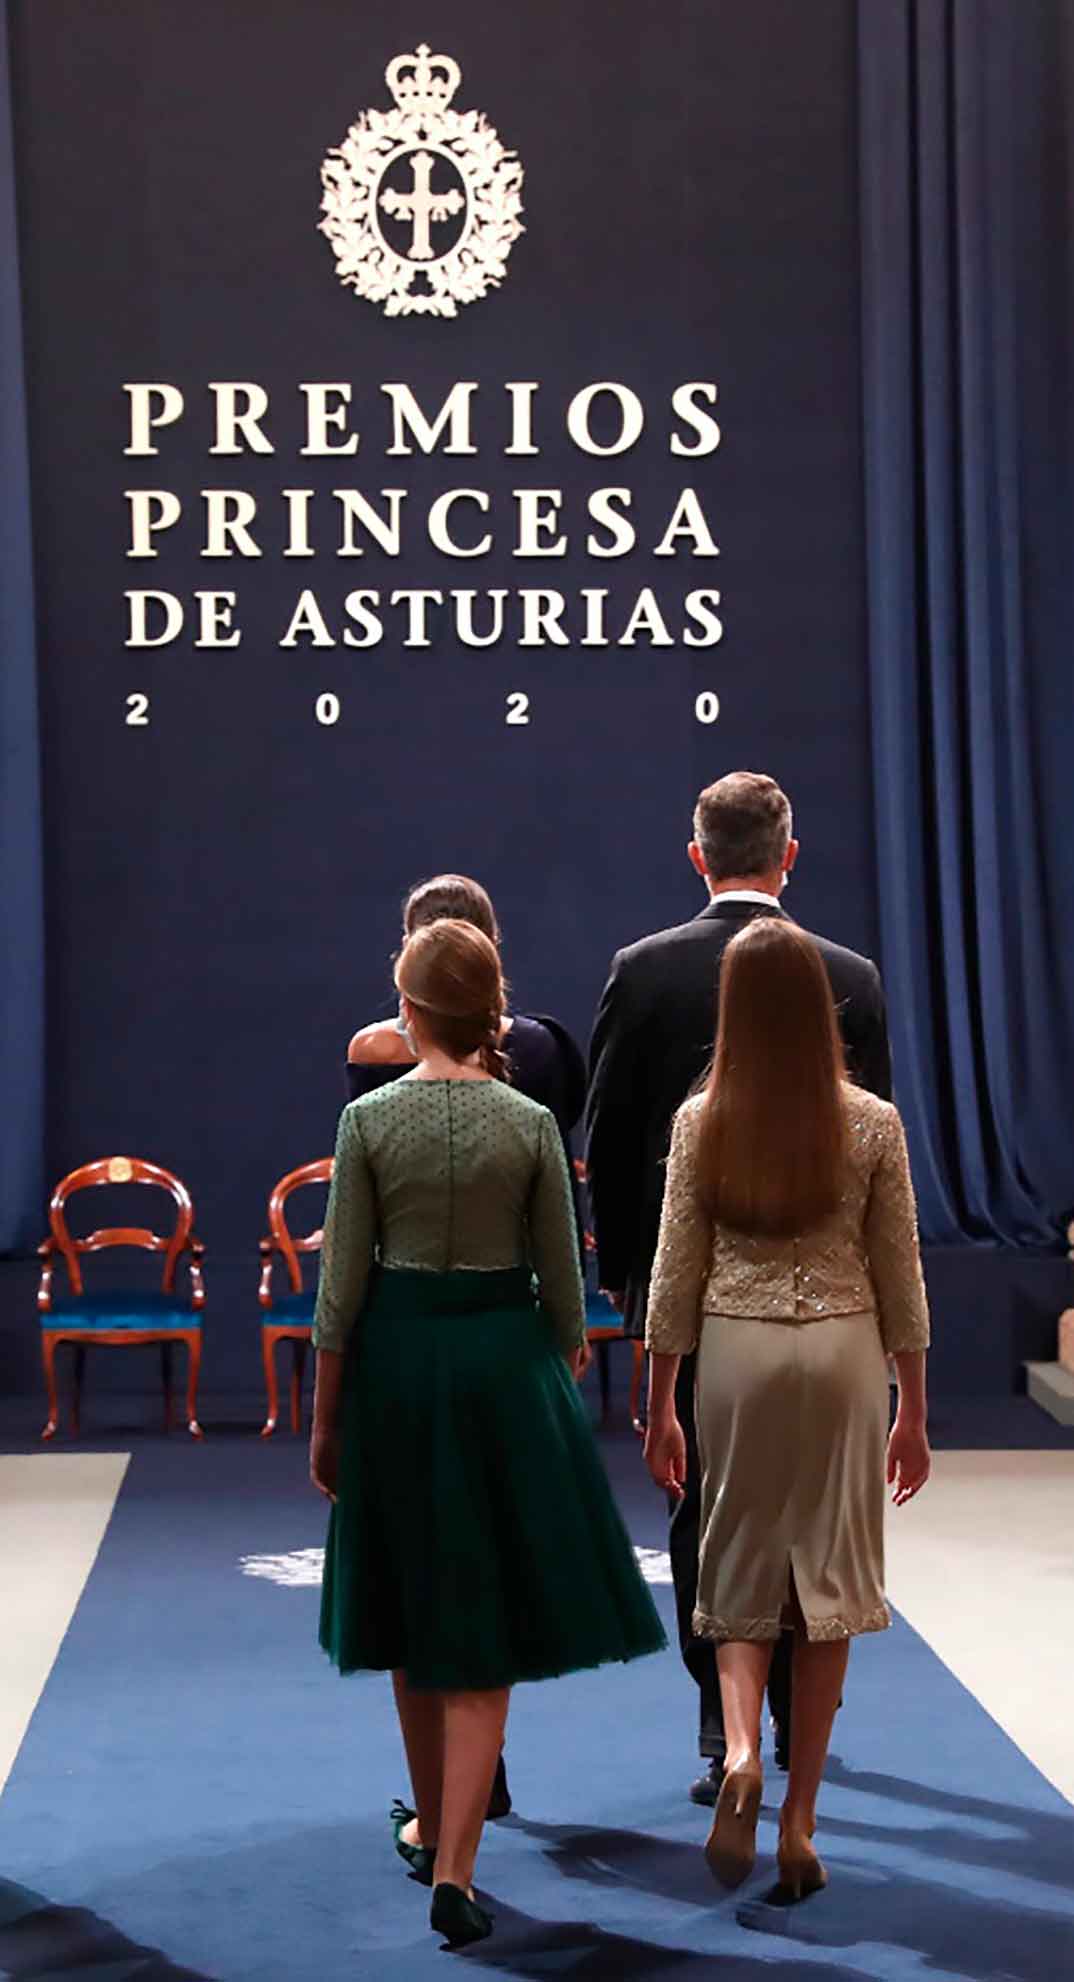 Premios Princesa de Asturias 2020 © Casa S.M. El Rey